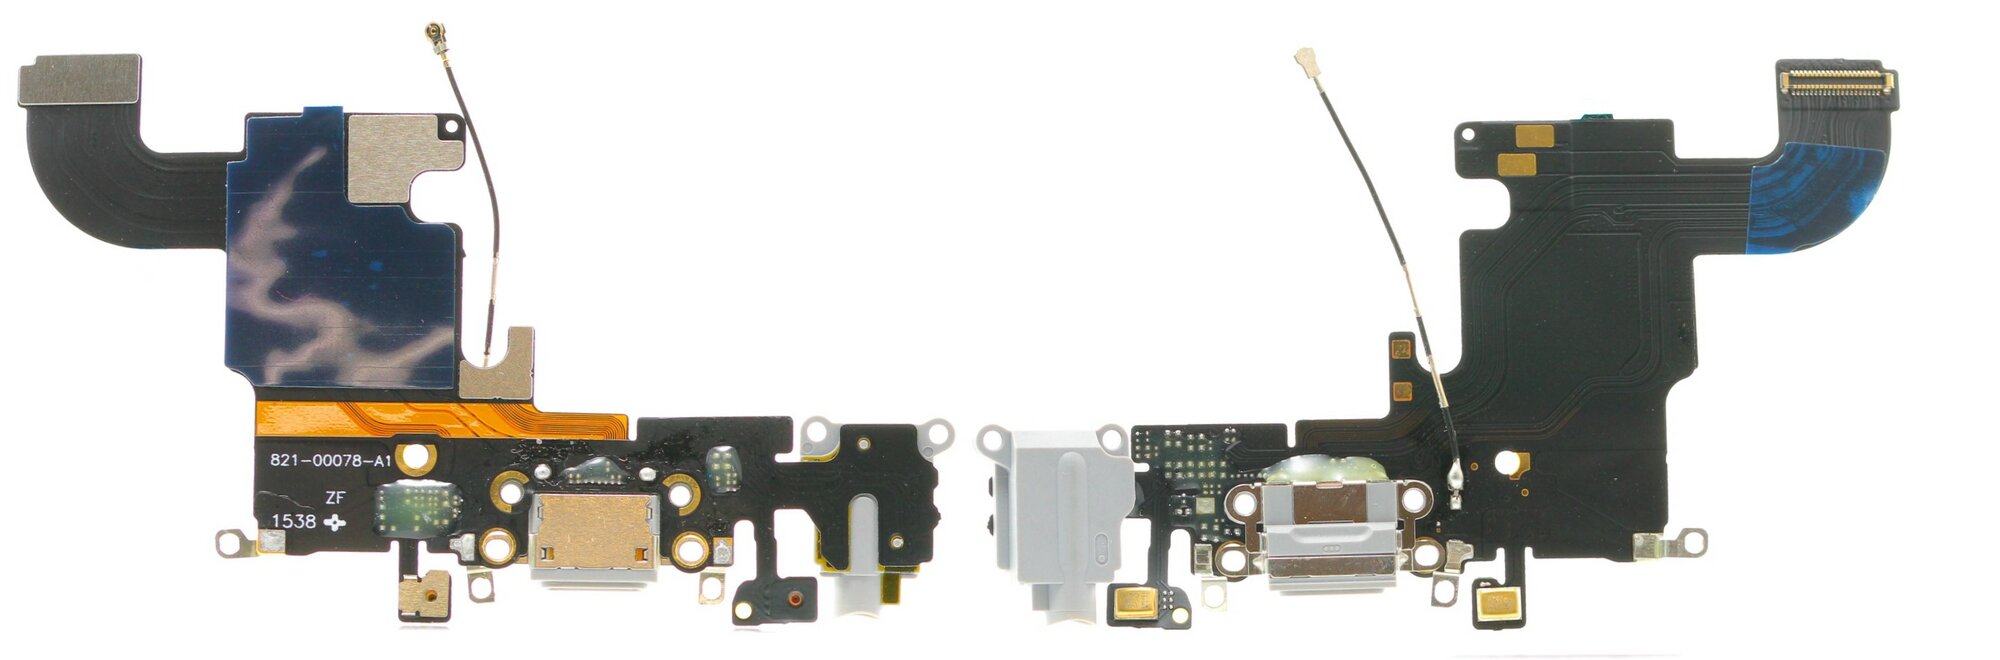 Шлейф iPhone 6S + разъем зарядки + разъем гарнитуры + микрофон (серый)